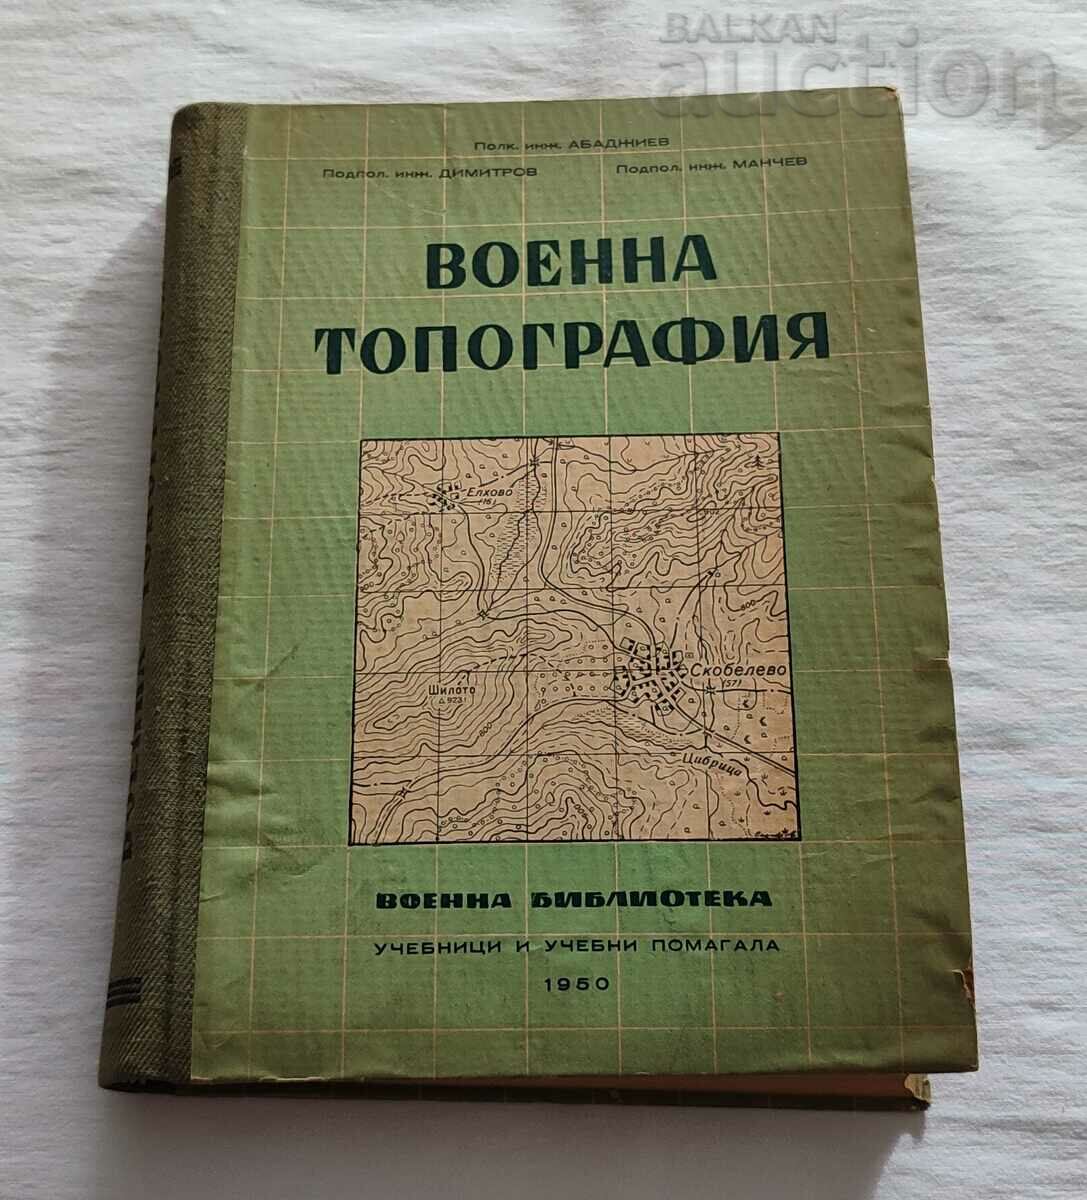 TOPOGRAFIE MILITARĂ 1950